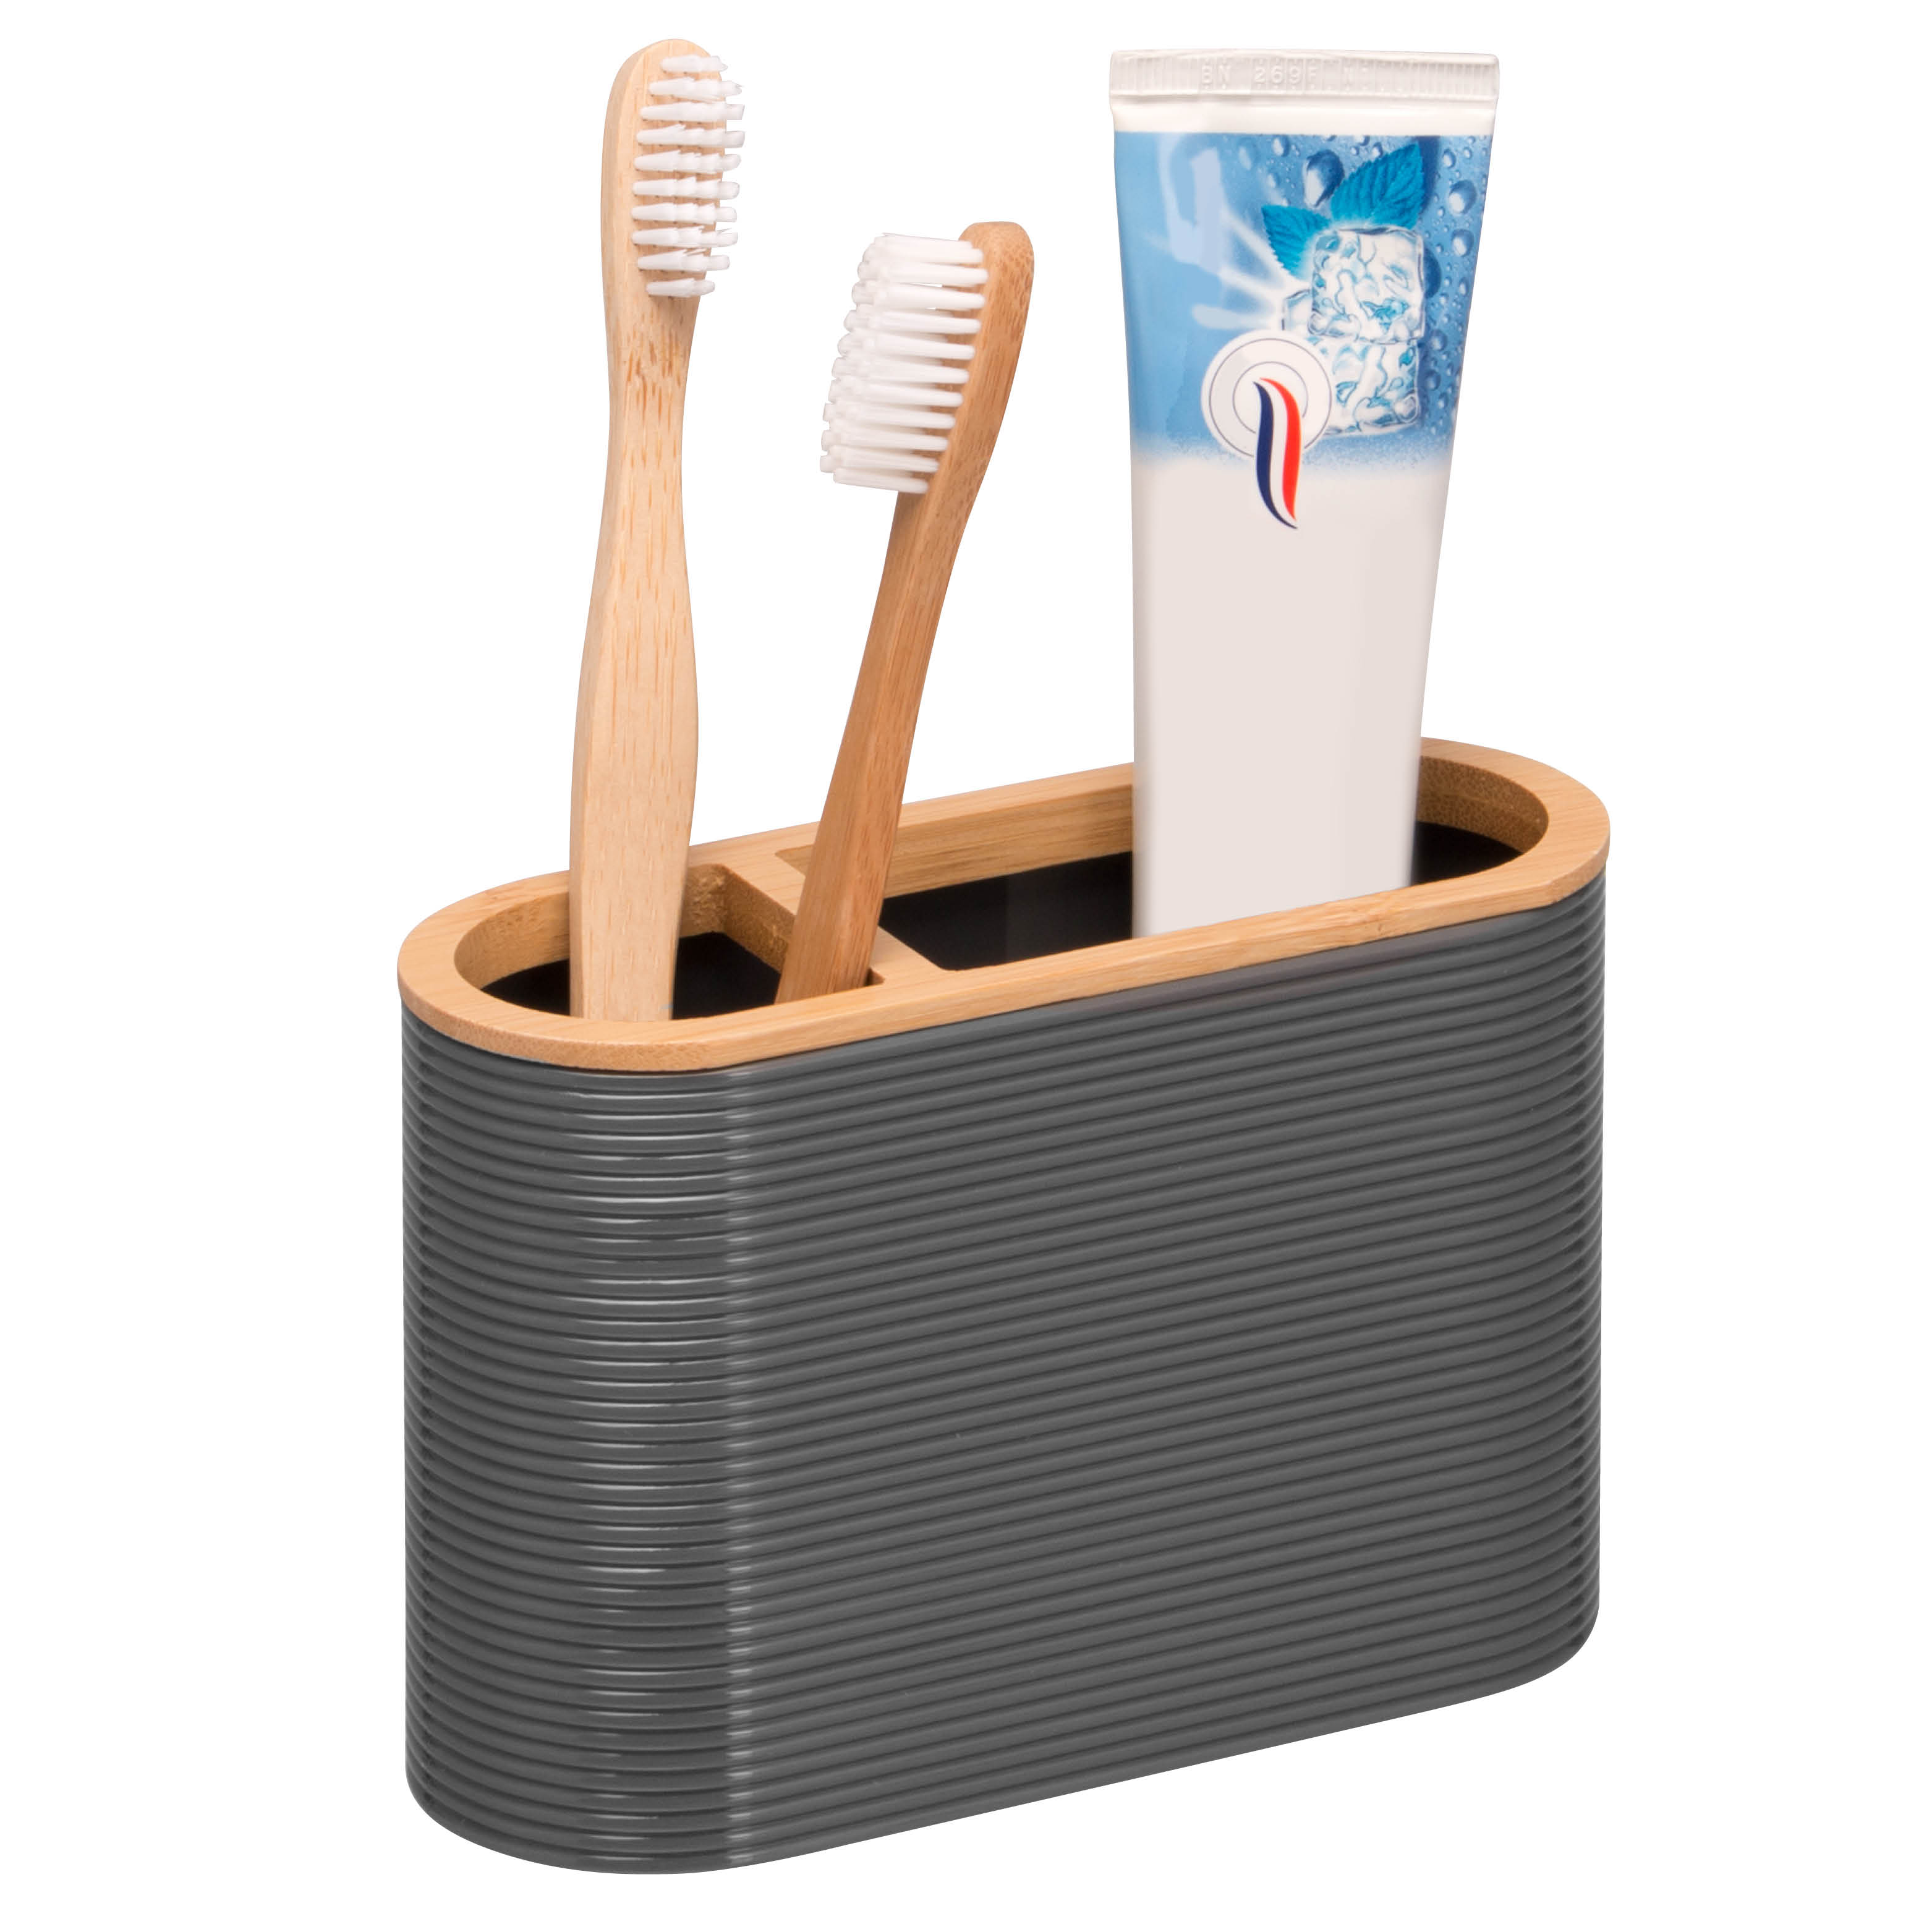 Zahnbürstenhalter SEGNO aus Bambus und Kunststoff | Utensilienständer grau